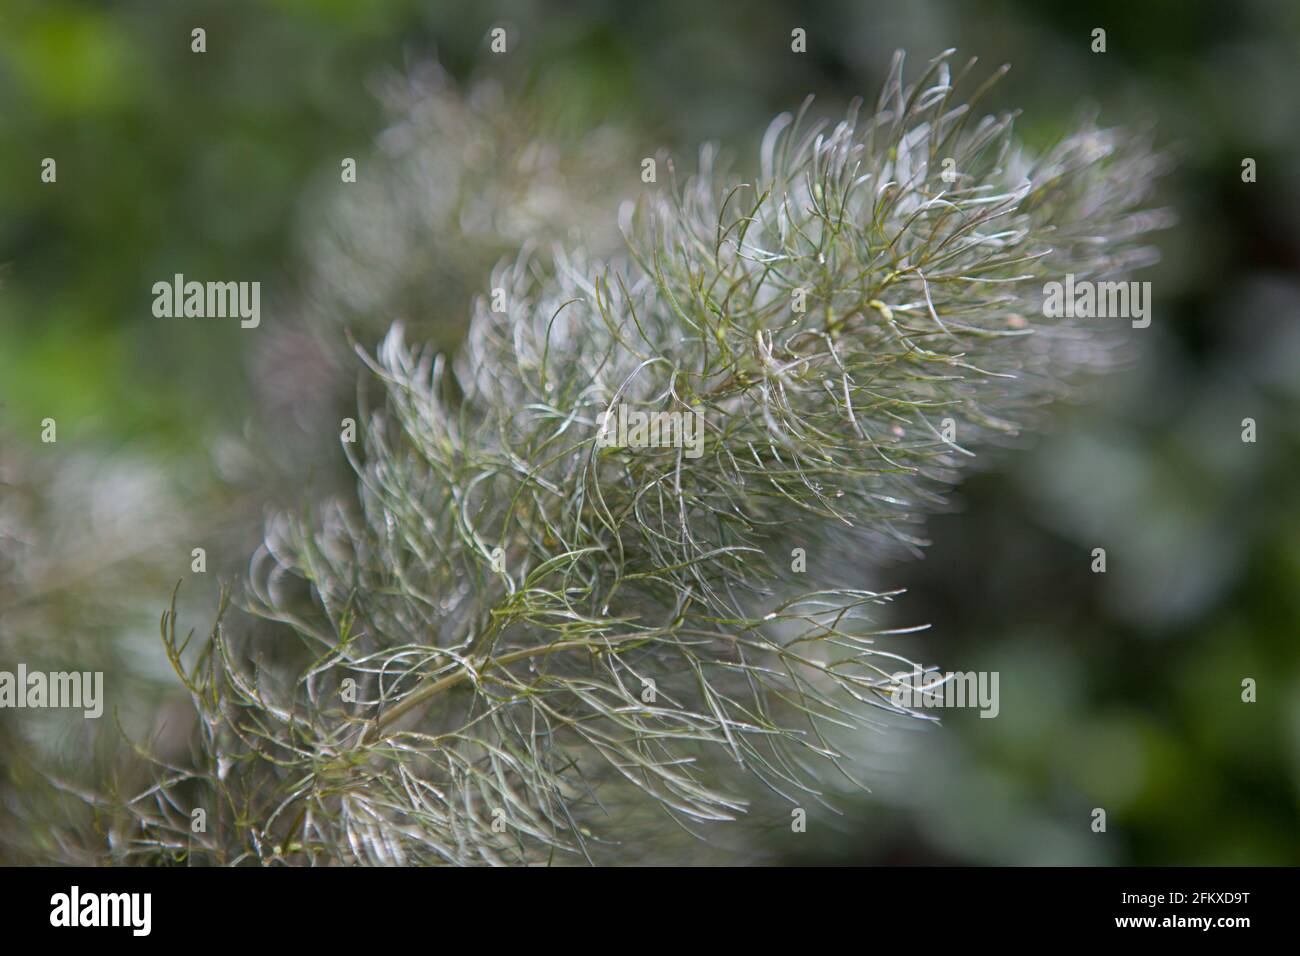 Las hojas de la planta de hinojo (Foeniculum vulgare), comúnmente utilizadas como hierba aromática y culinaria. Foto de stock